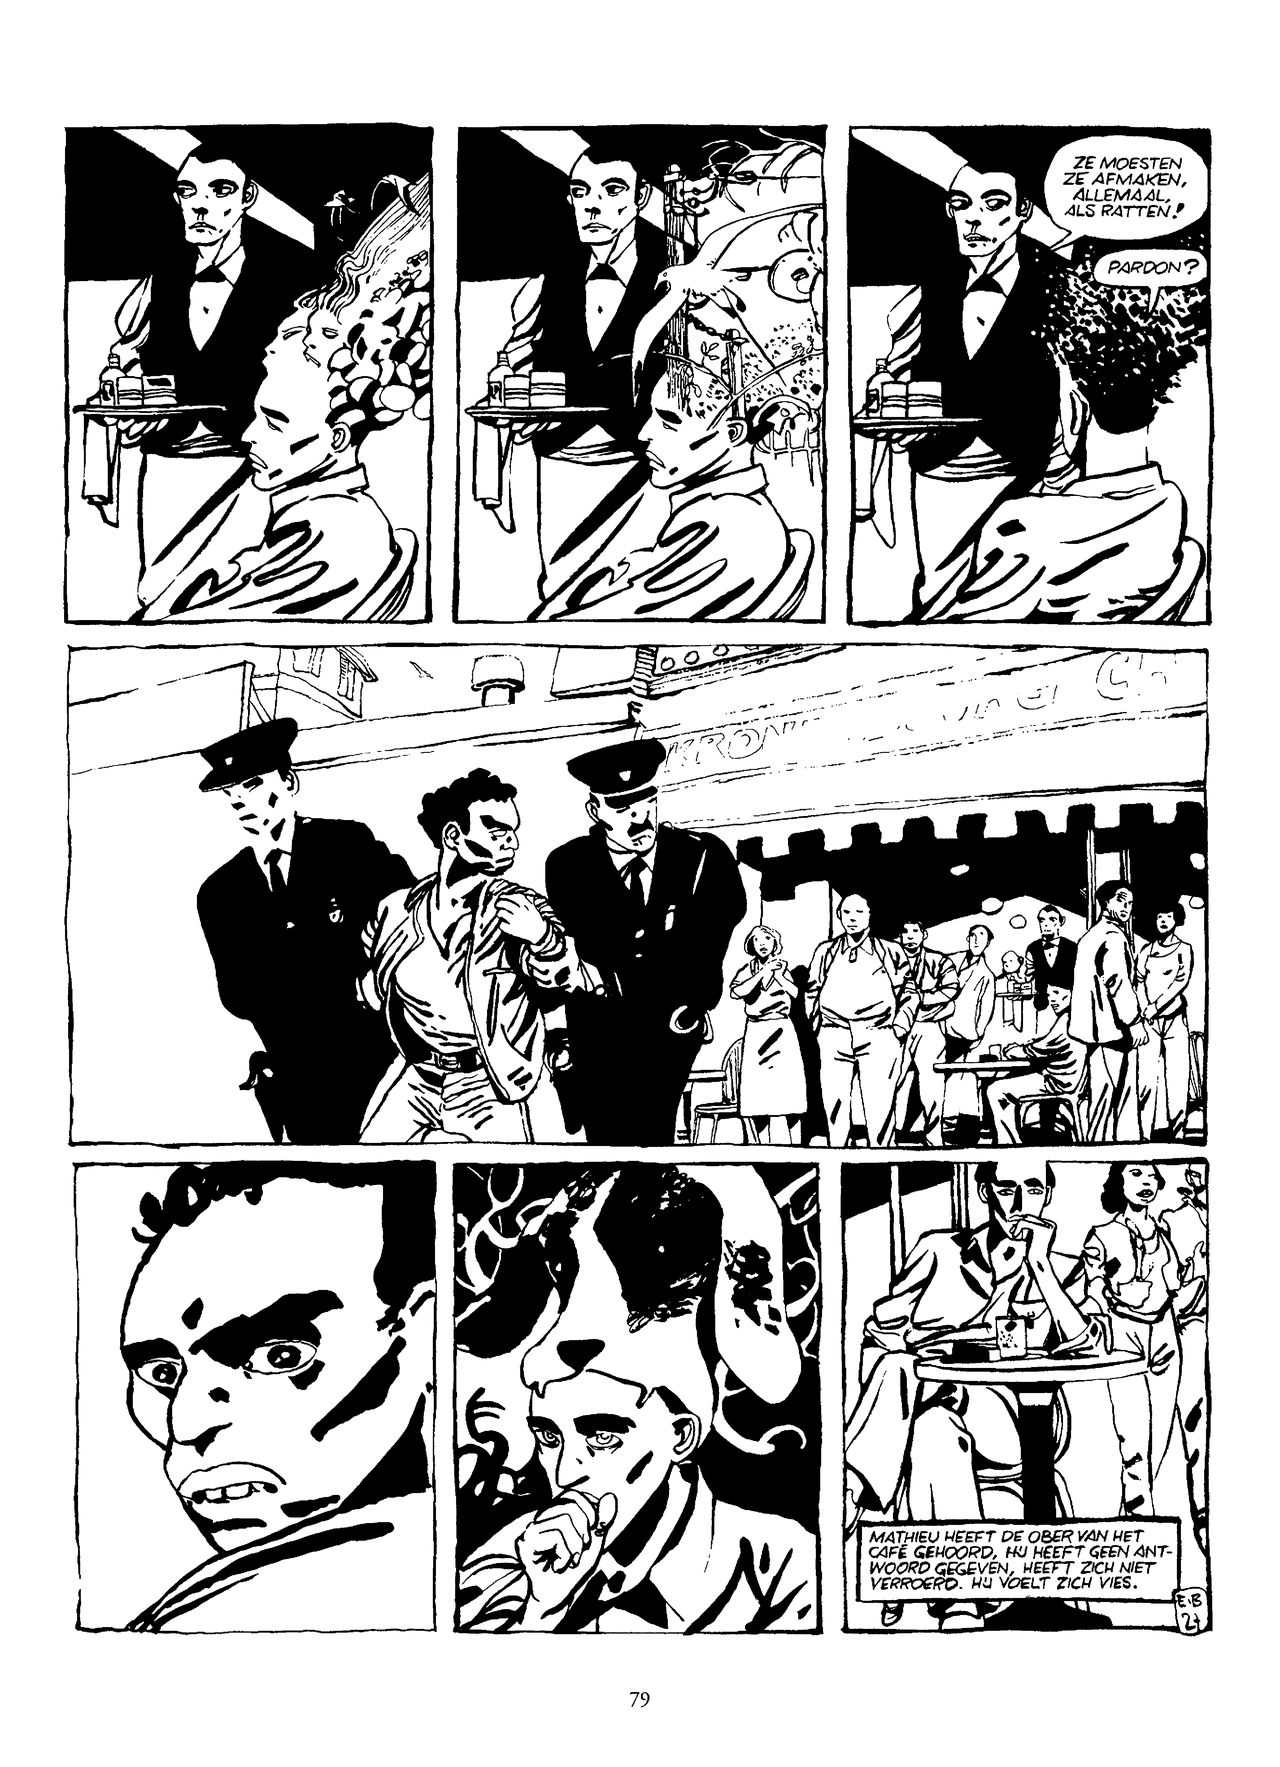 Pagina uit de strip De eerste reis van de Franse tekenaar Edmond Baudoin